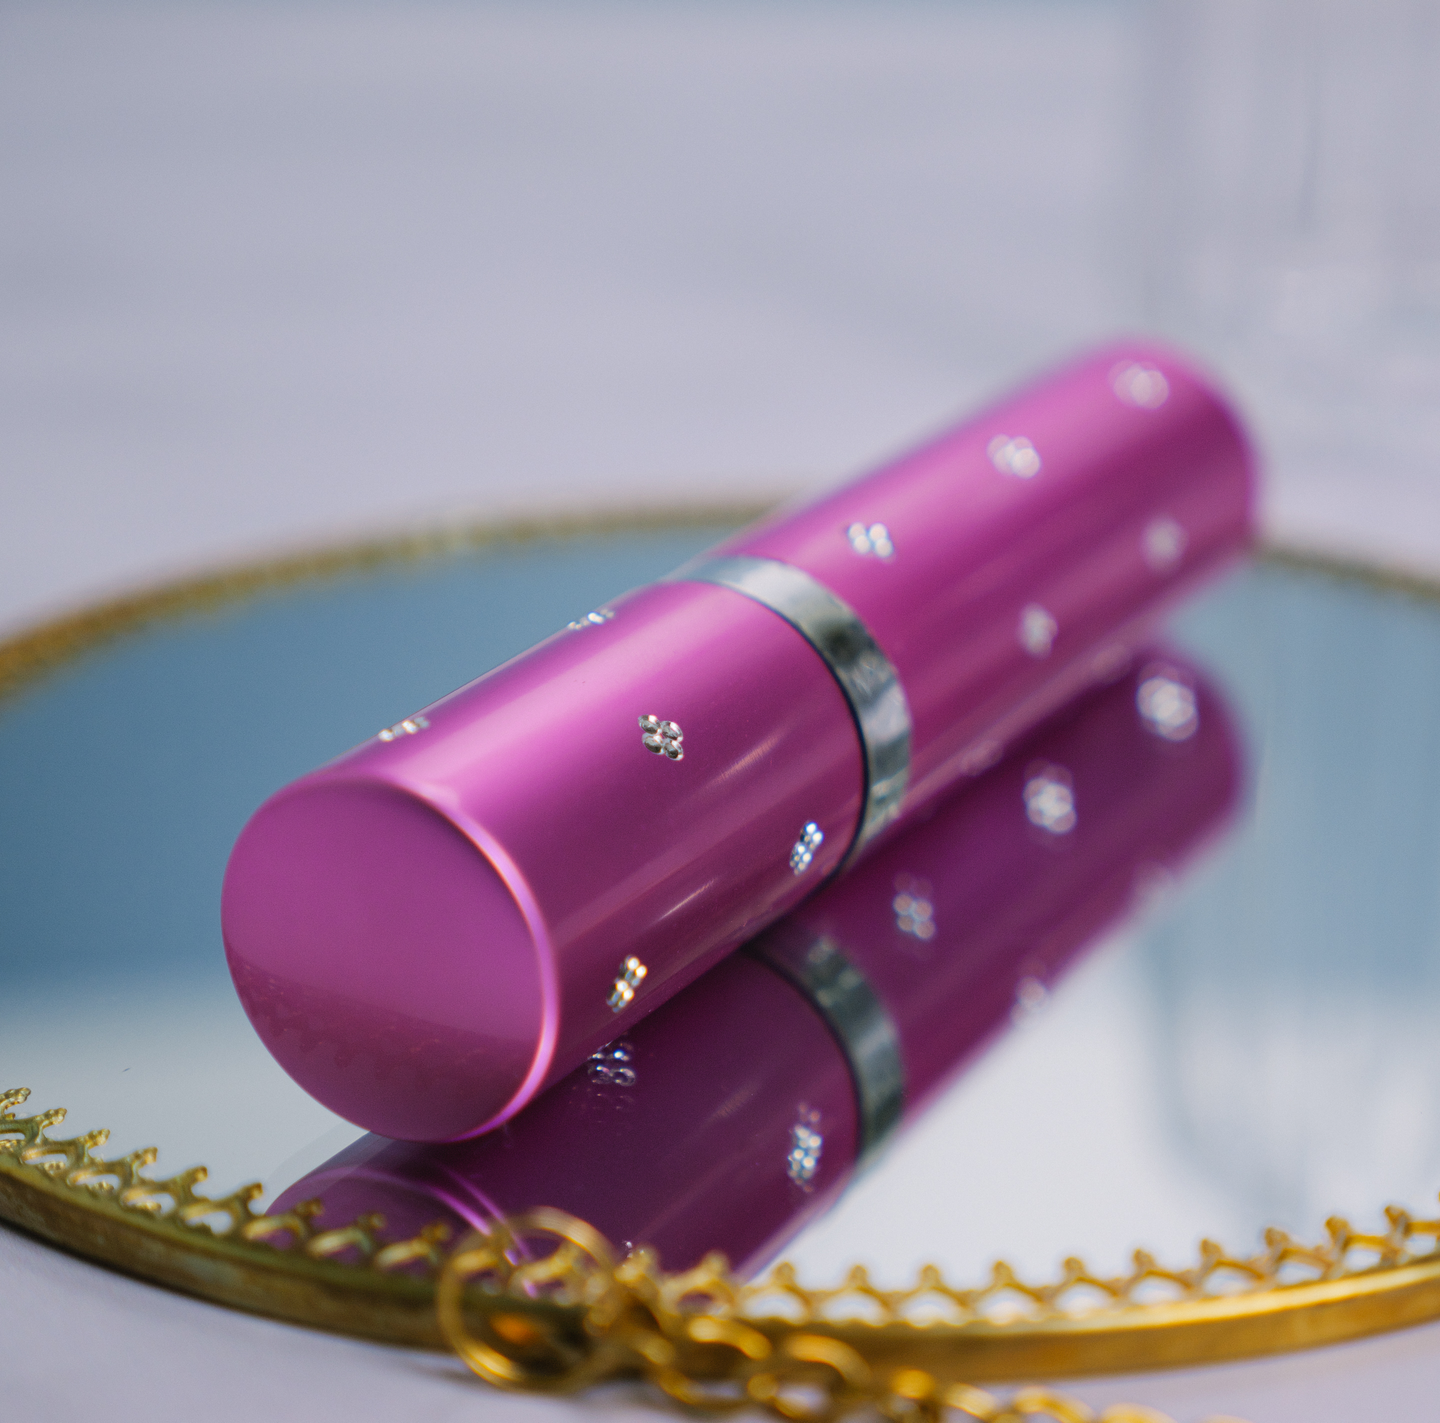 Elektroschocker & Taser - Lippenstift Elektroshocker Leuchte rosa